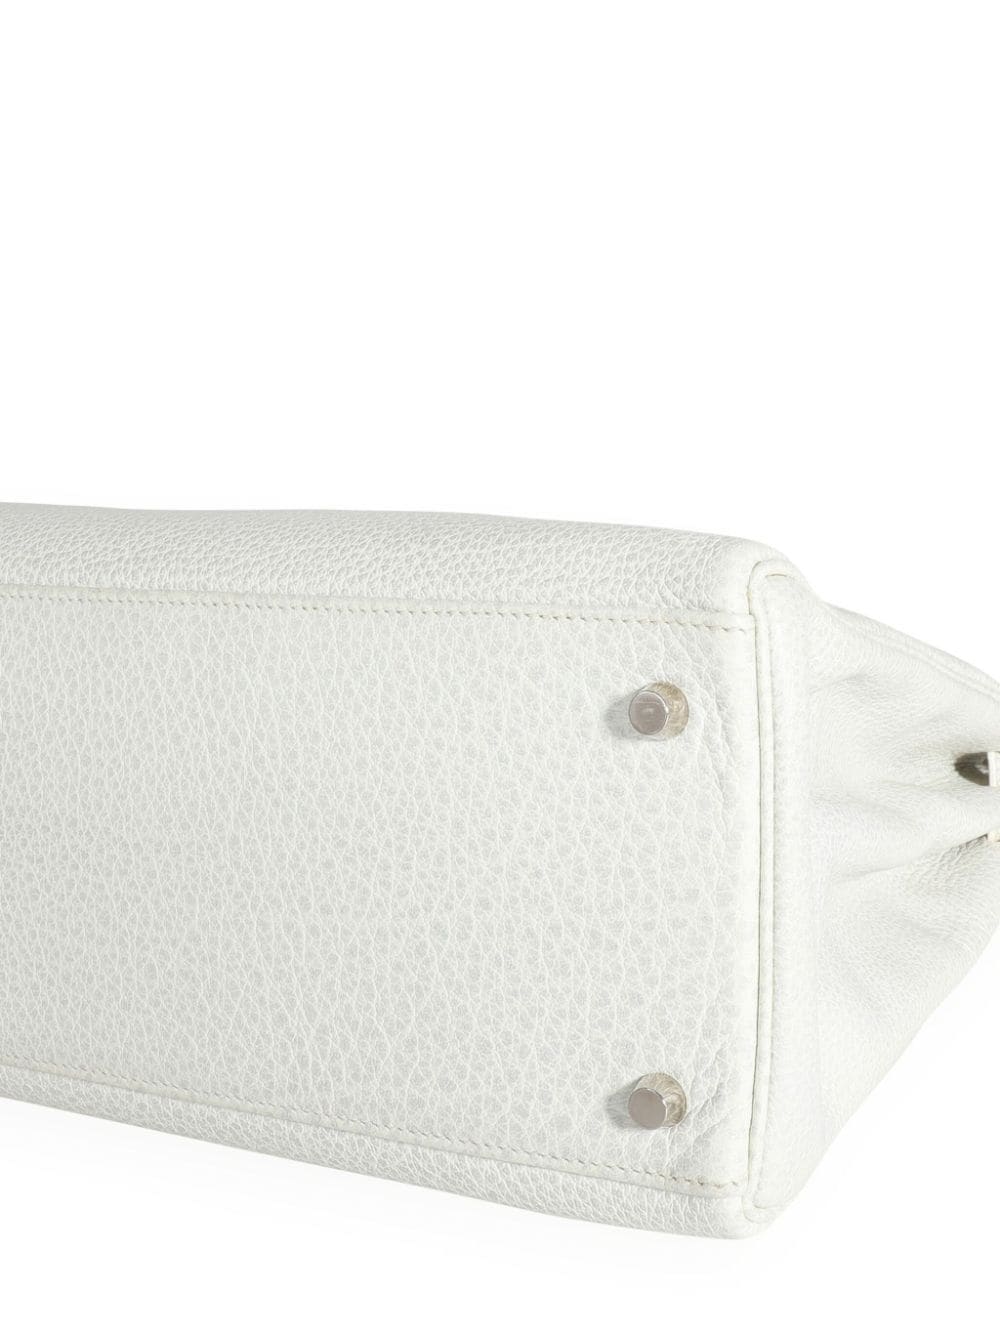 Pre-owned Hermes Retourné Kelly 35 Handbag In White